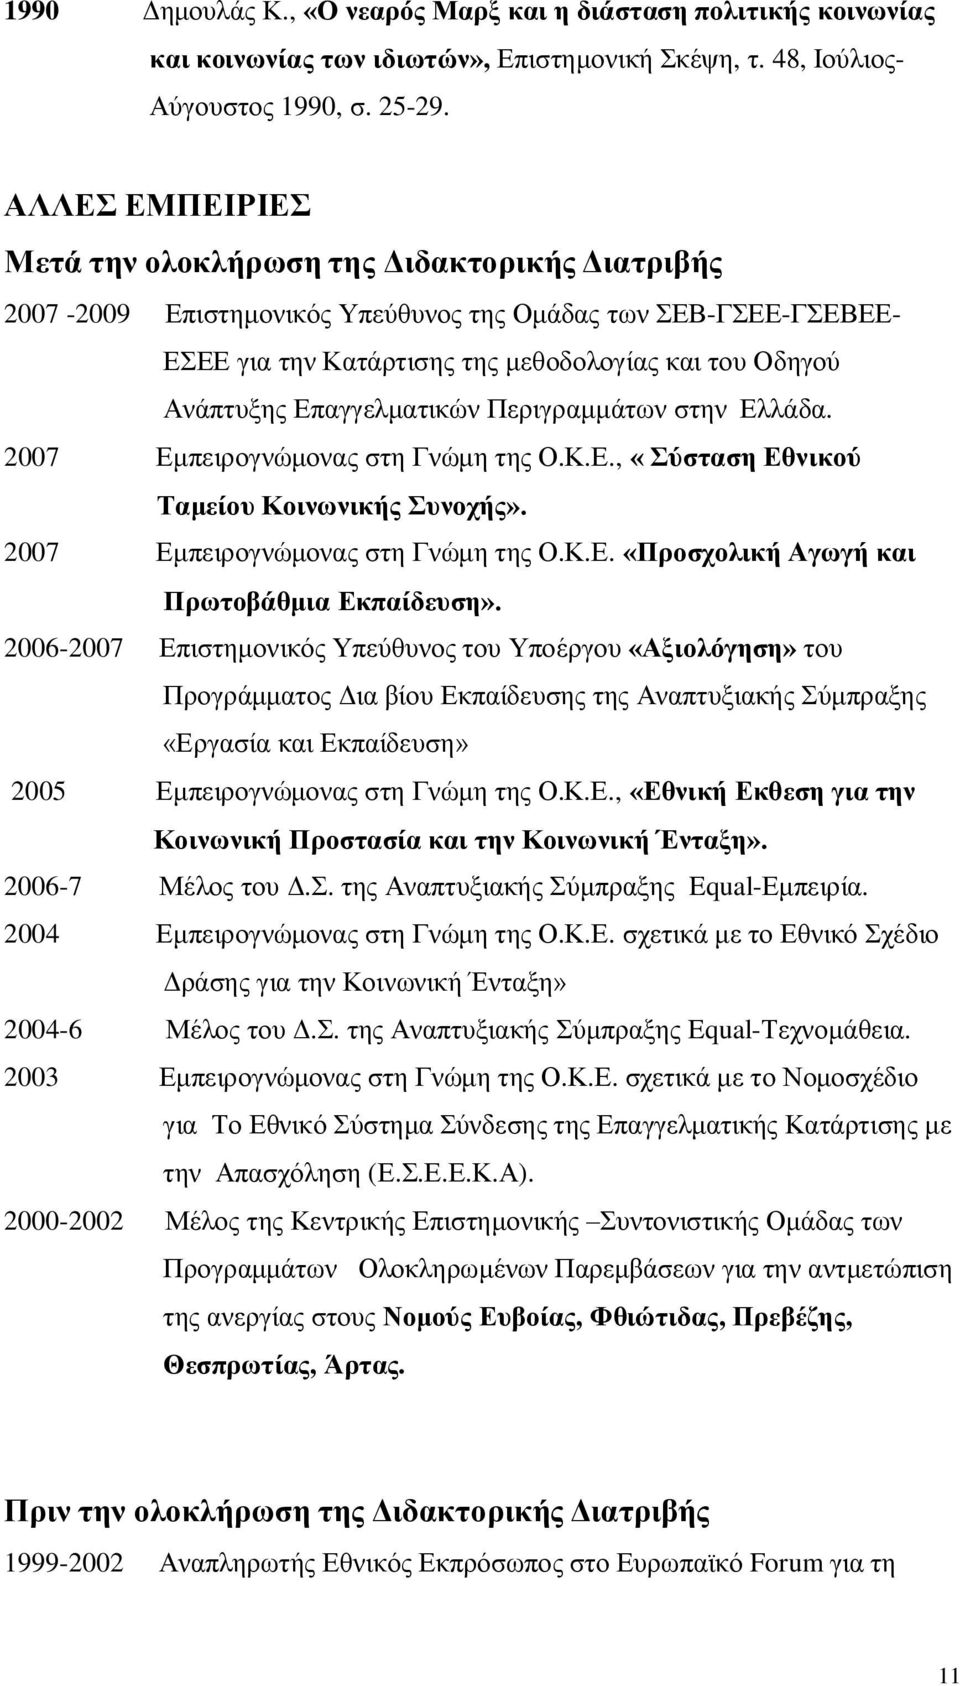 Επαγγελματικών Περιγραμμάτων στην Ελλάδα. 2007 Εμπειρογνώμονας στη Γνώμη της Ο.Κ.Ε., «Σύσταση Εθνικού Ταμείου Κοινωνικής Συνοχής». 2007 Εμπειρογνώμονας στη Γνώμη της Ο.Κ.Ε. «Προσχολική Αγωγή και Πρωτοβάθμια Εκπαίδευση».